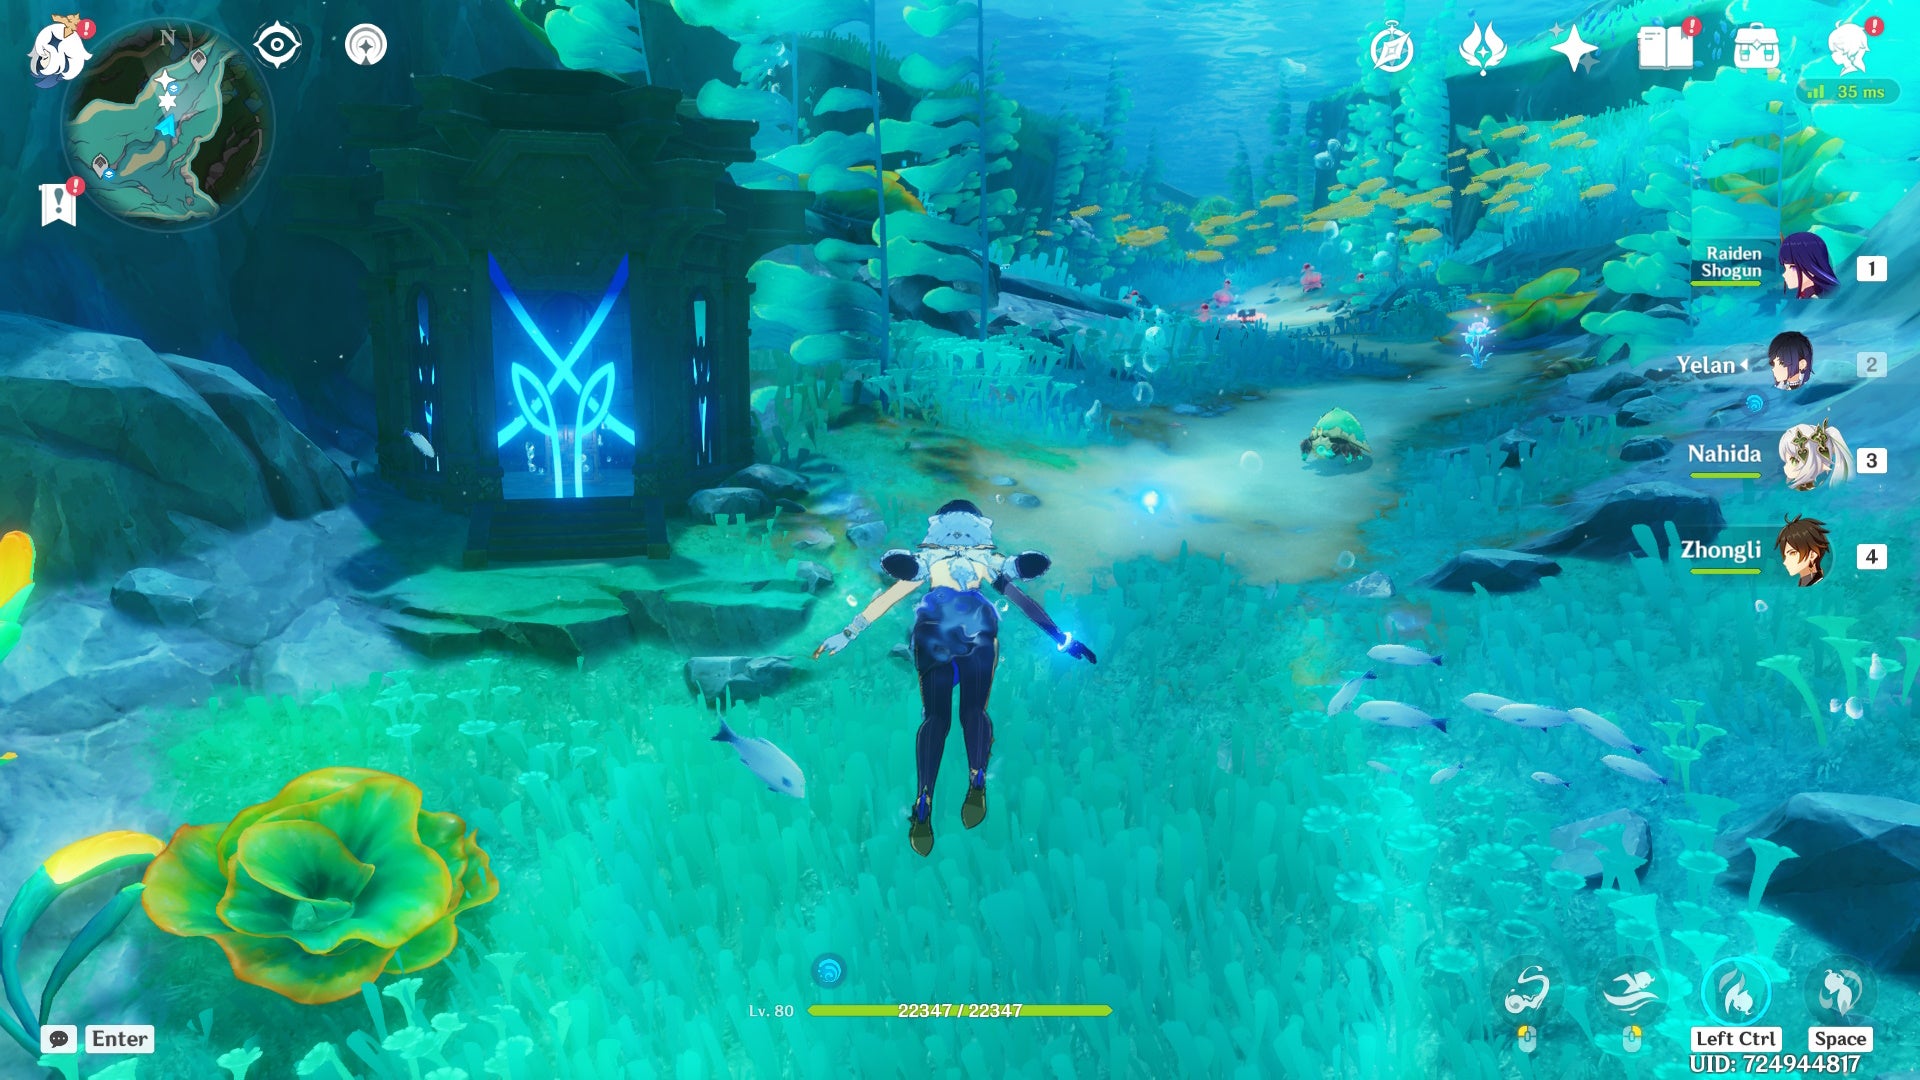 personaje de yelan bajo el agua mirando un santuario de profundidad fontaine